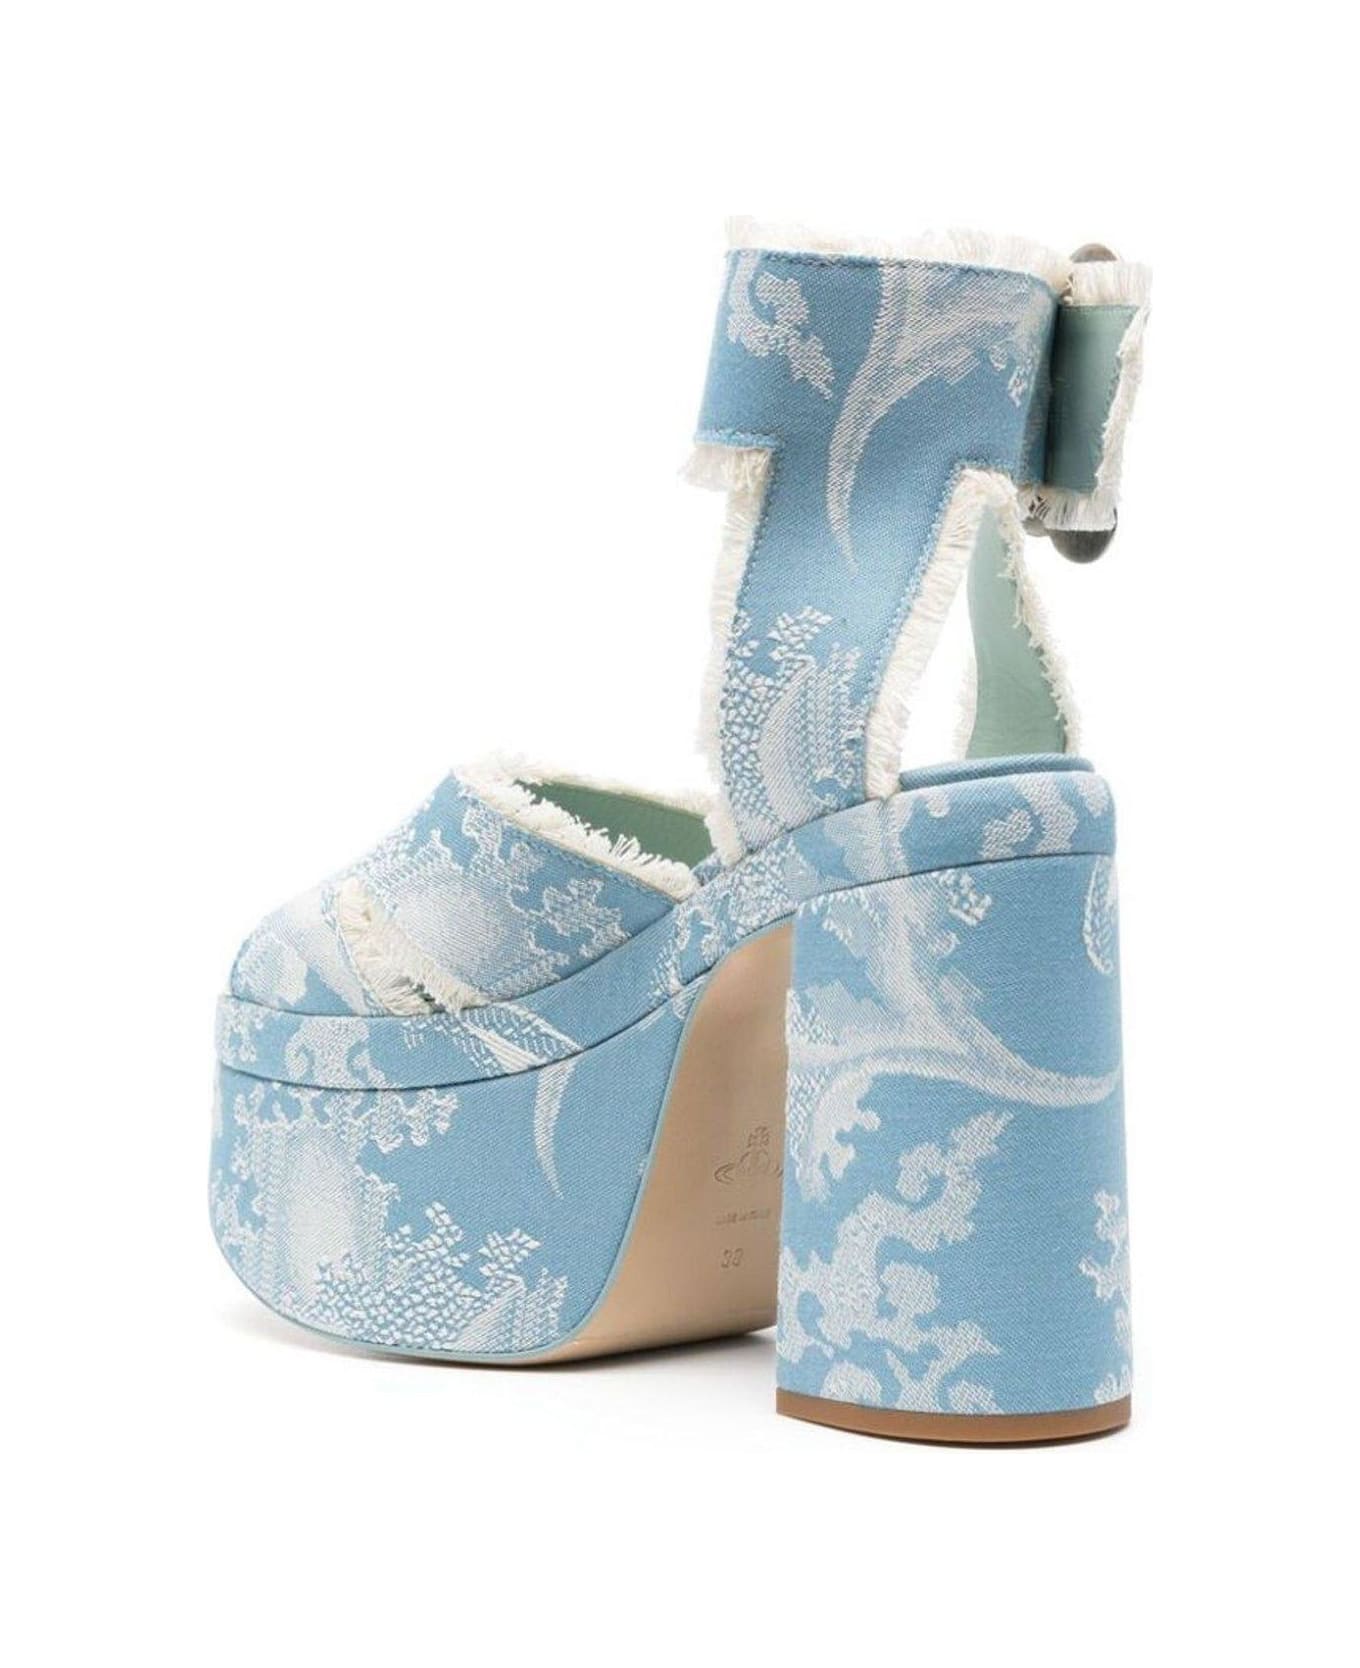 Vivienne Westwood Ankle Buckled Platform Sandals - BLUE